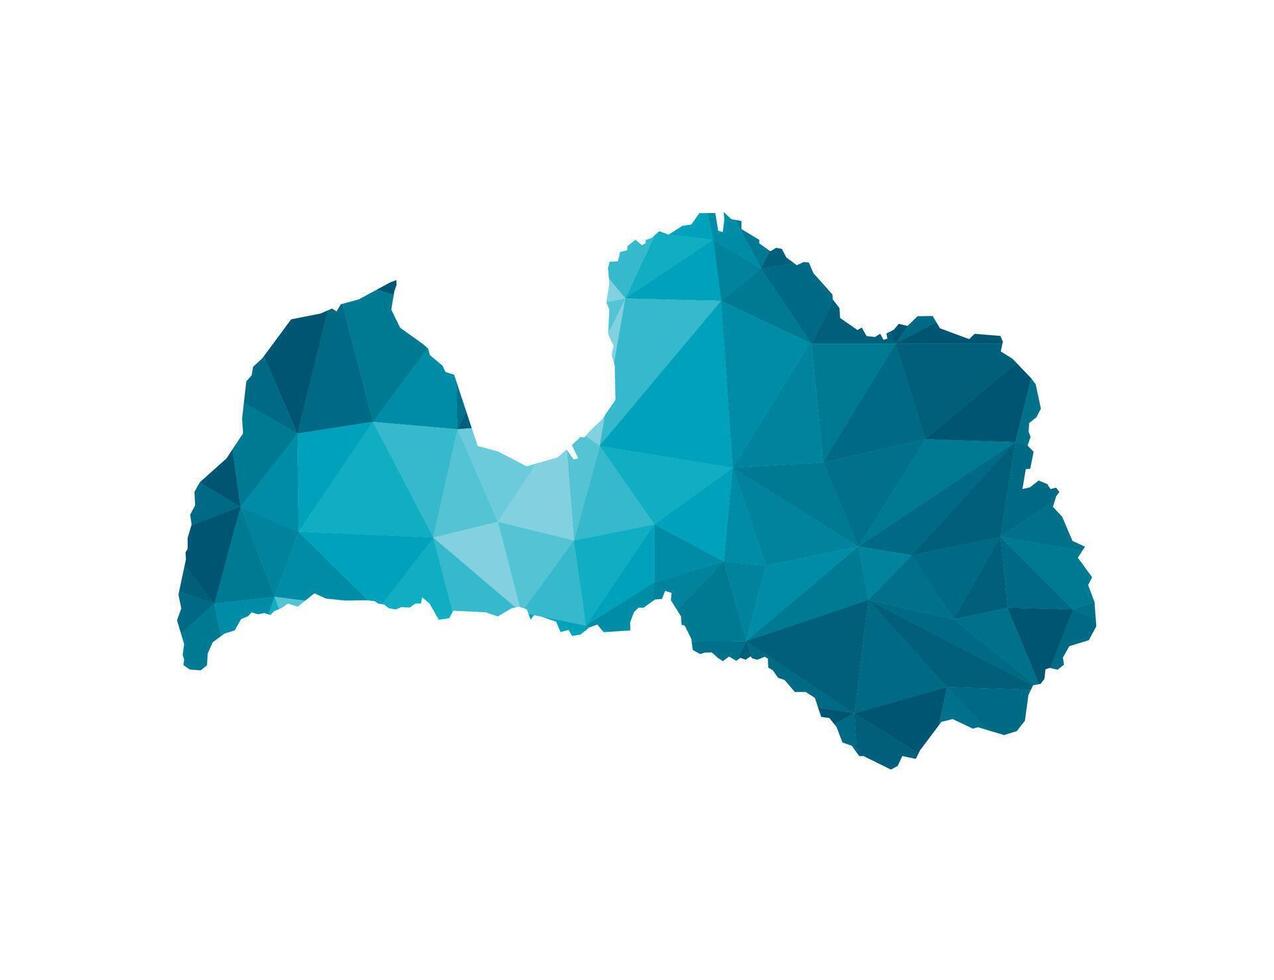 Vektor isoliert Illustration Symbol mit vereinfacht Blau Silhouette von Lettland Karte. polygonal geometrisch Stil, dreieckig Formen. Weiß Hintergrund.